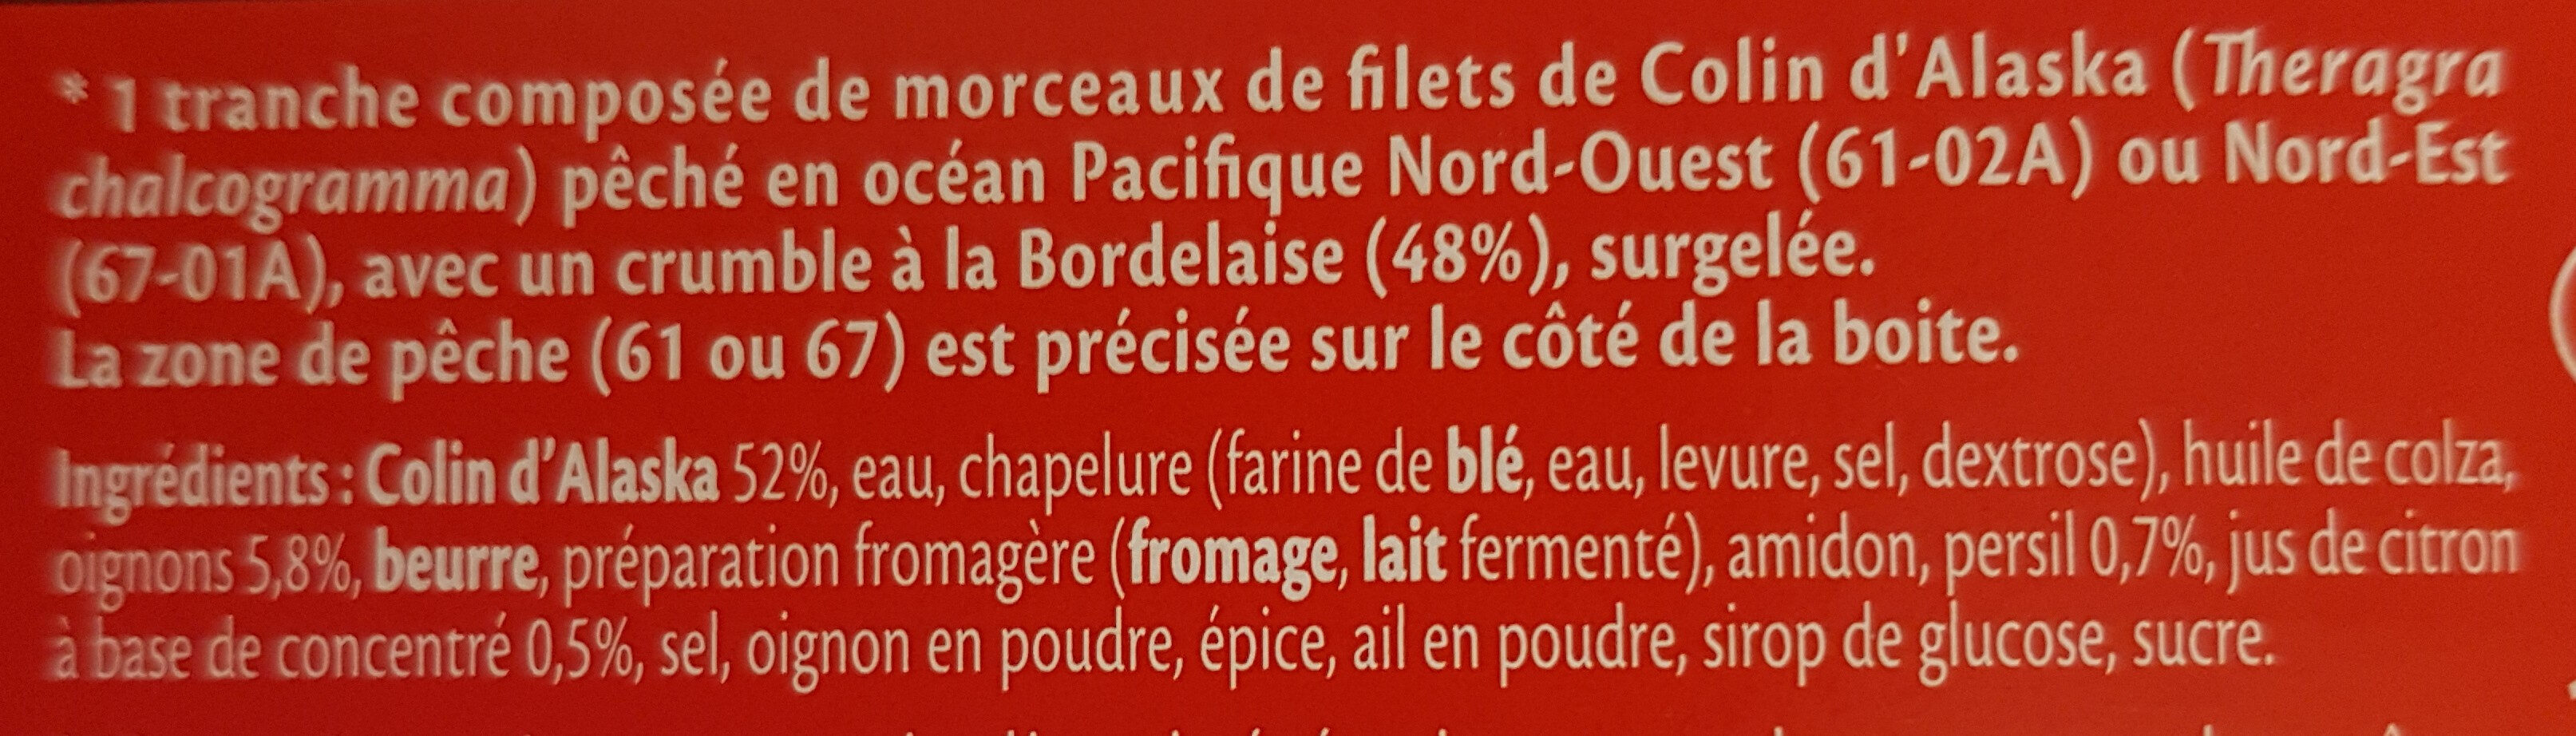 Gratinée à la bordelaise crumble croustillant - Ingredients - fr